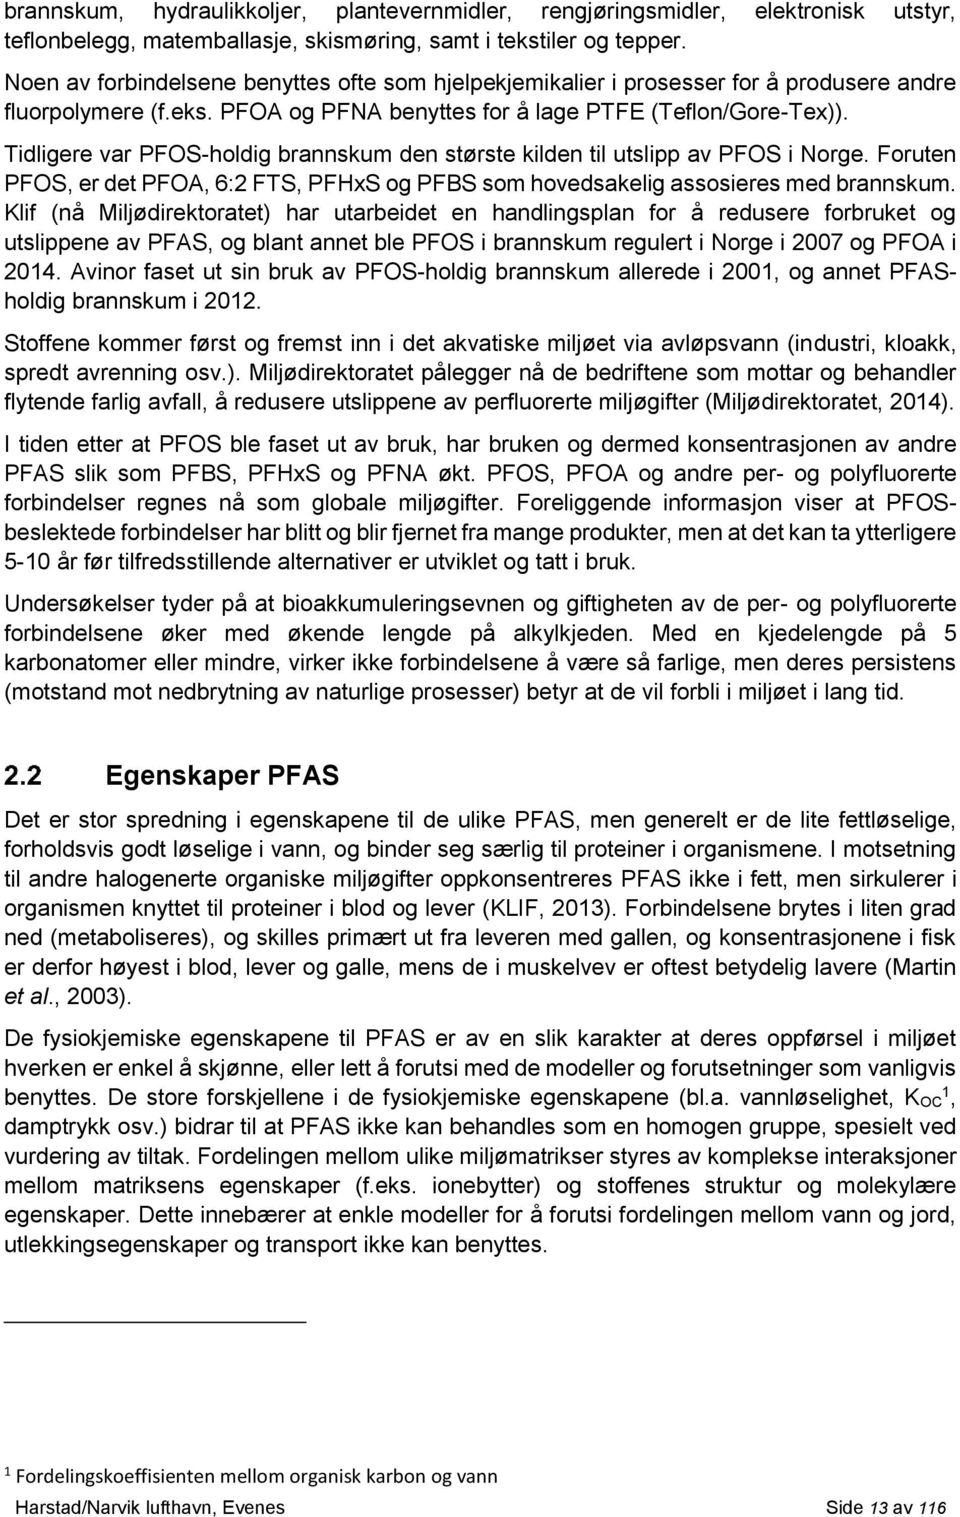 Tidligere var PFOS-holdig brannskum den største kilden til utslipp av PFOS i Norge. Foruten PFOS, er det PFOA, 6:2 FTS, PFHxS og PFBS som hovedsakelig assosieres med brannskum.